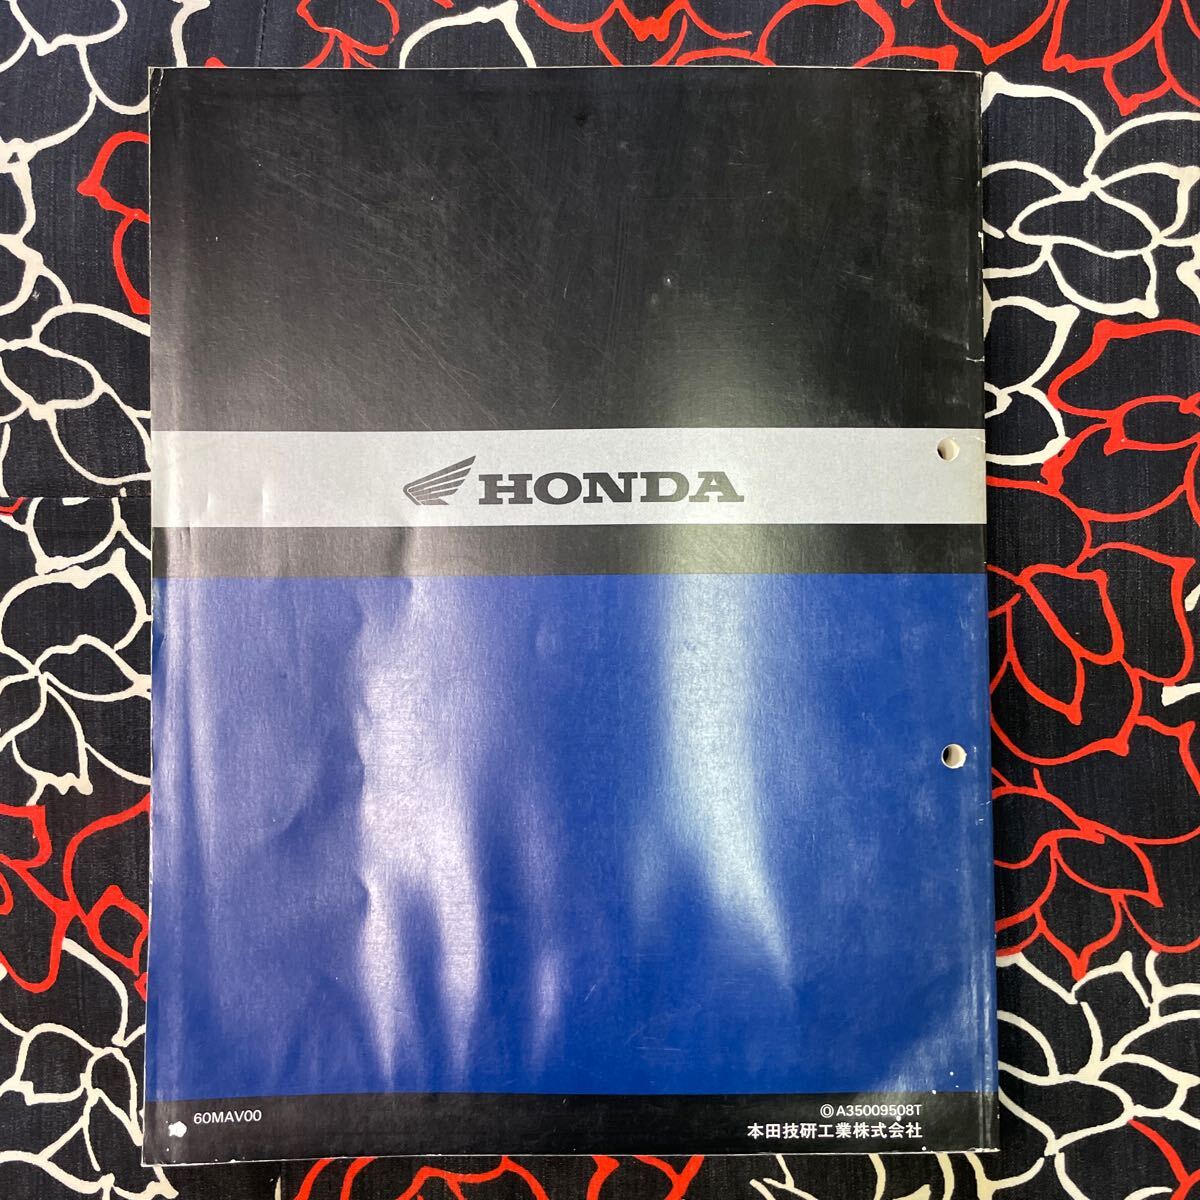  Honda VRX Roadster service manual 